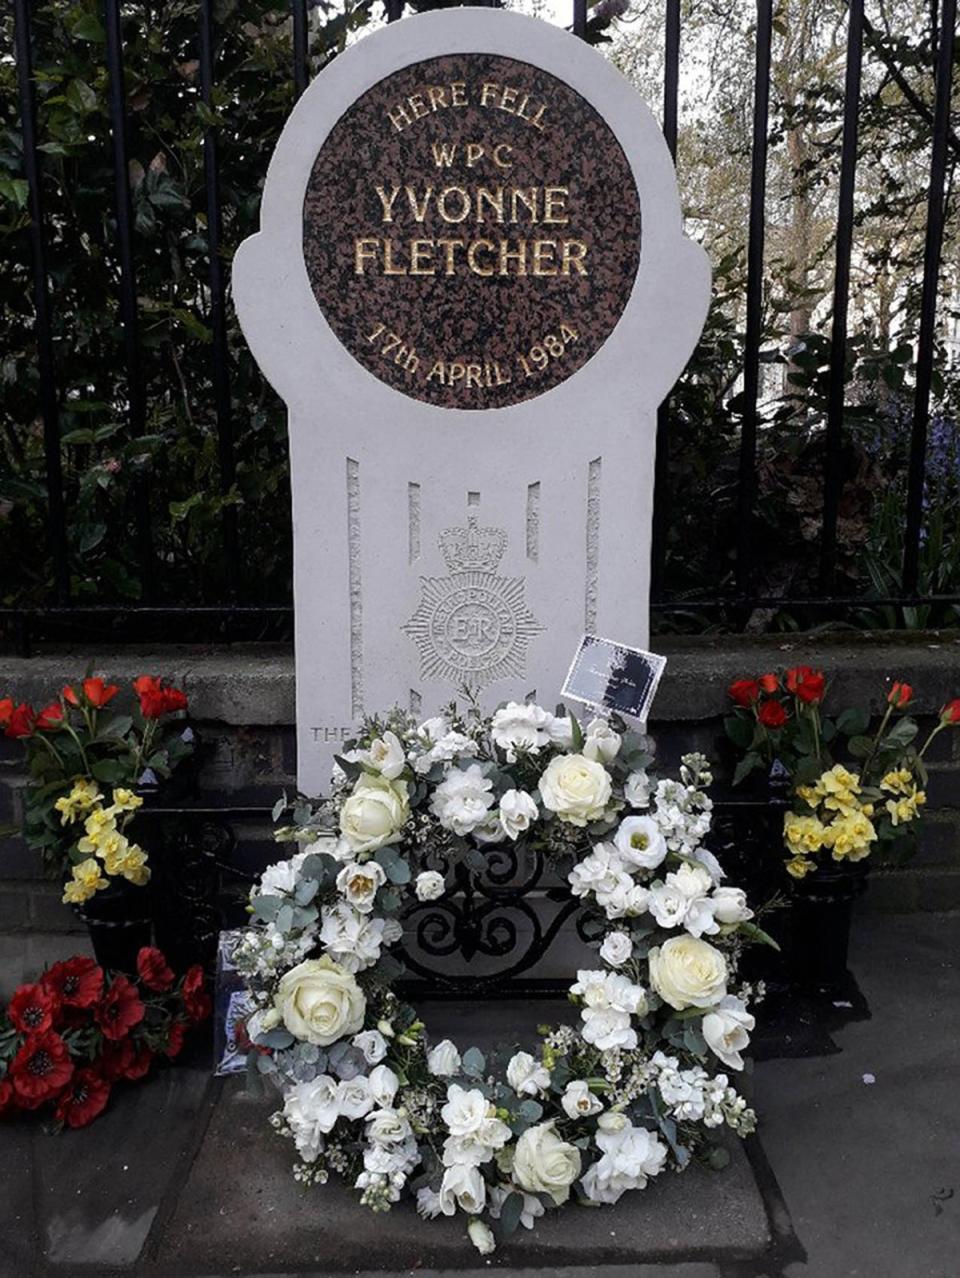 The memorial to Yvonne Fletcher in St James’s Square, London (Metropolitan Police/PA) (PA Media)